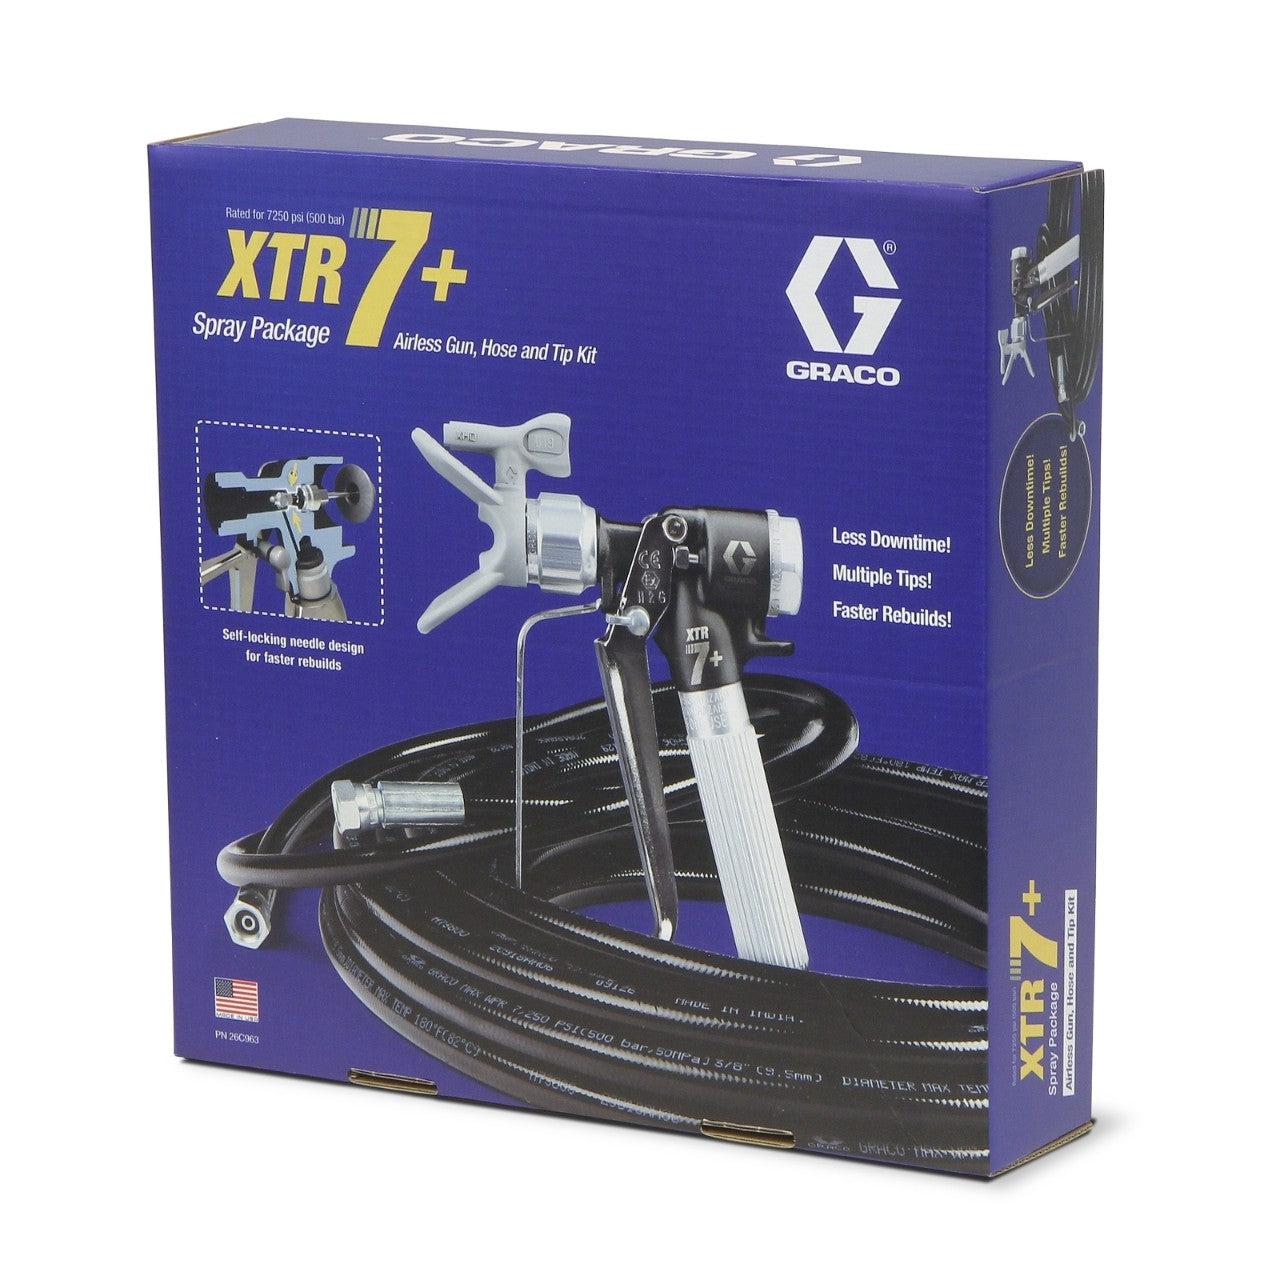 XTR7+ Gun, Hose and Tip Kit